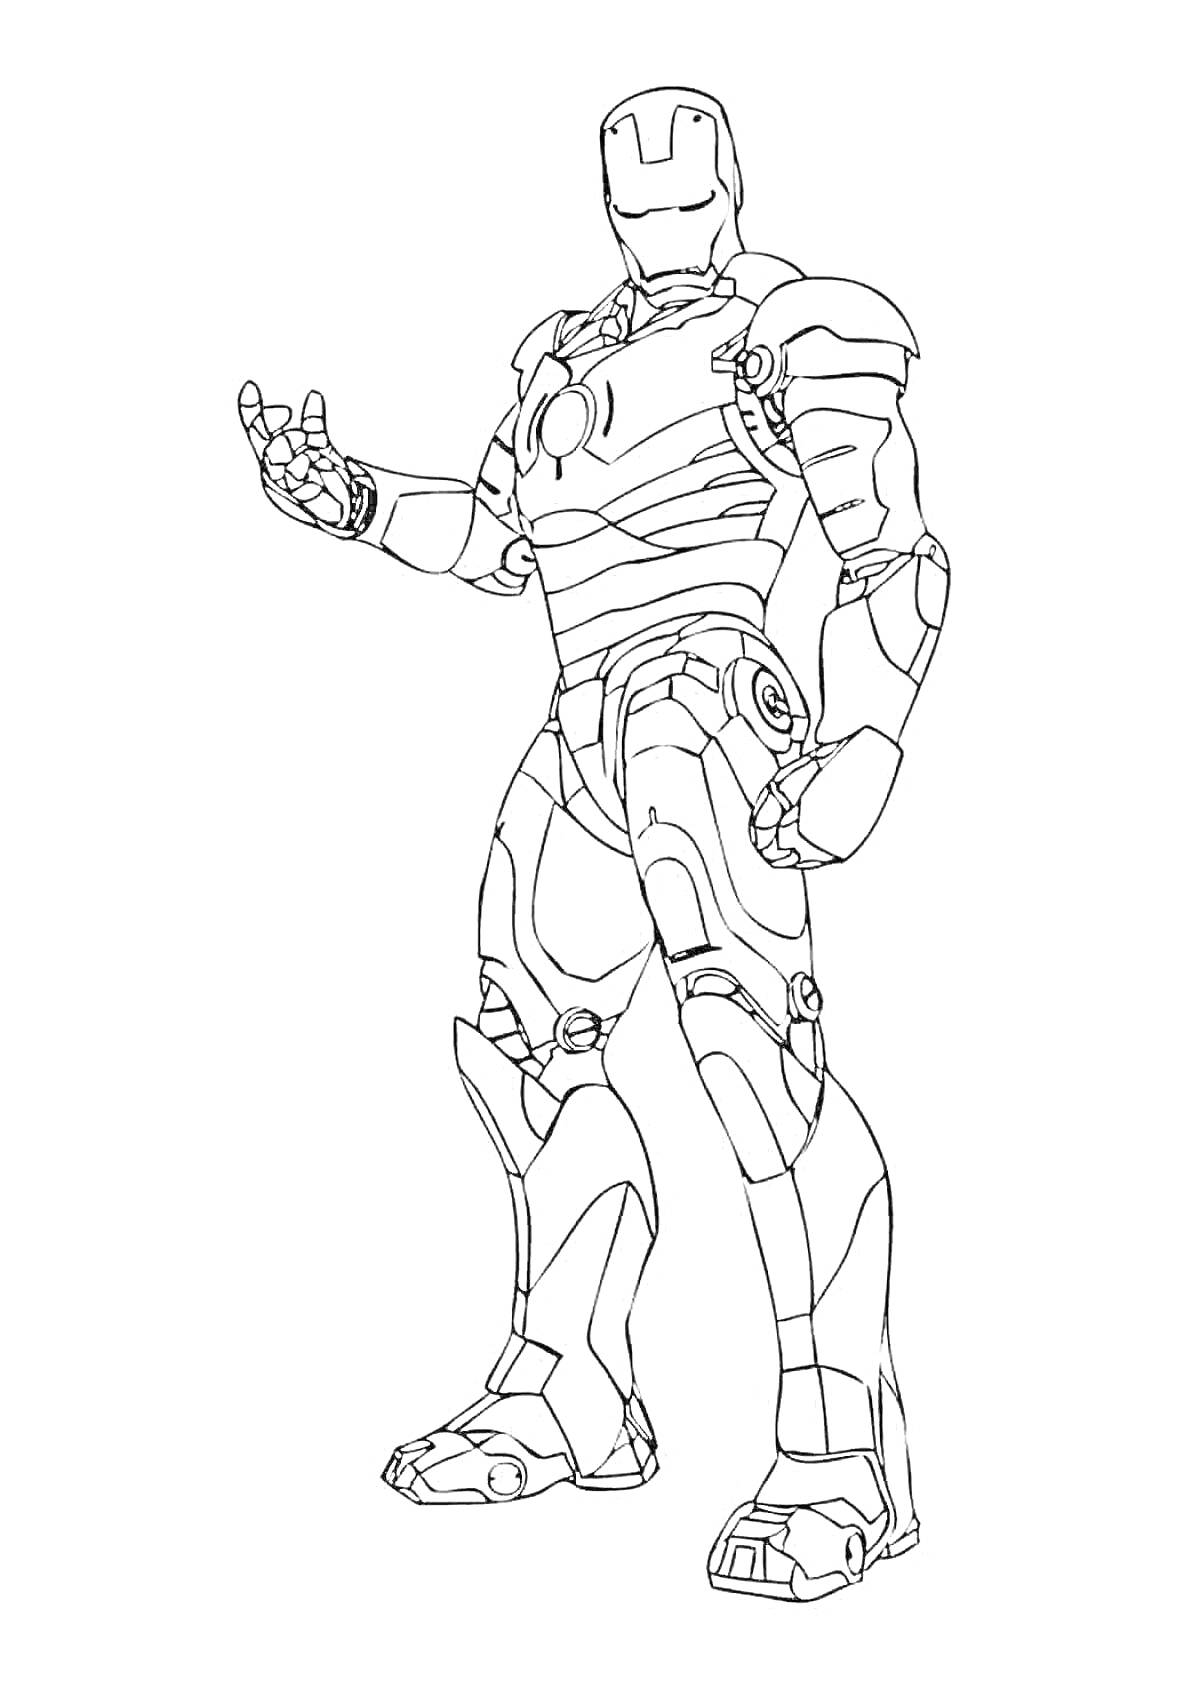 Раскраска Раскраска Железного Человека: стоящая фигура в костюме, правая рука согнута и поднята, кисть сложена в жесте сжатого кулака с вытянутым указательным пальцем